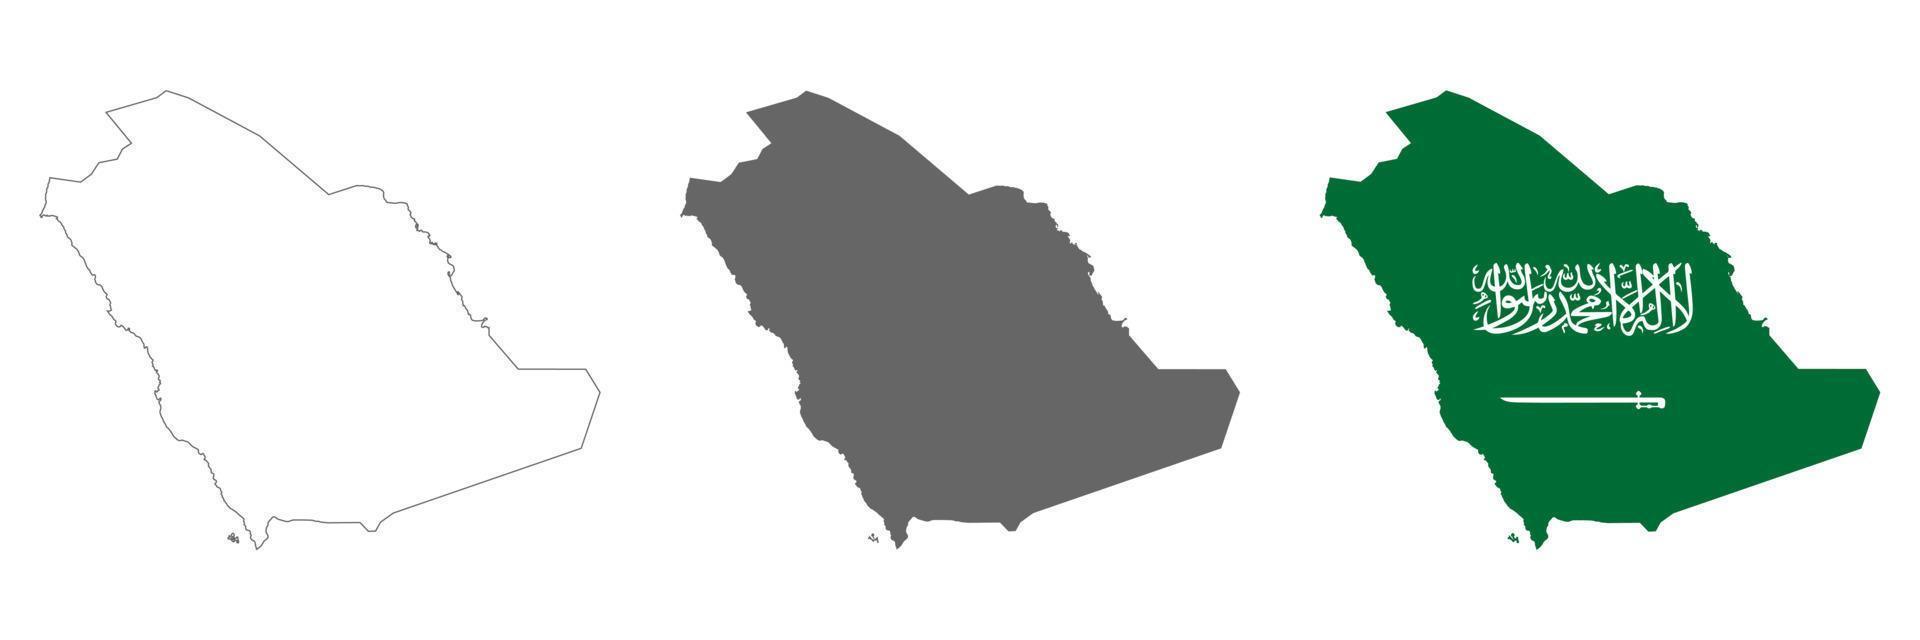 mycket detaljerad Saudiarabien karta med gränser isolerad på bakgrunden vektor